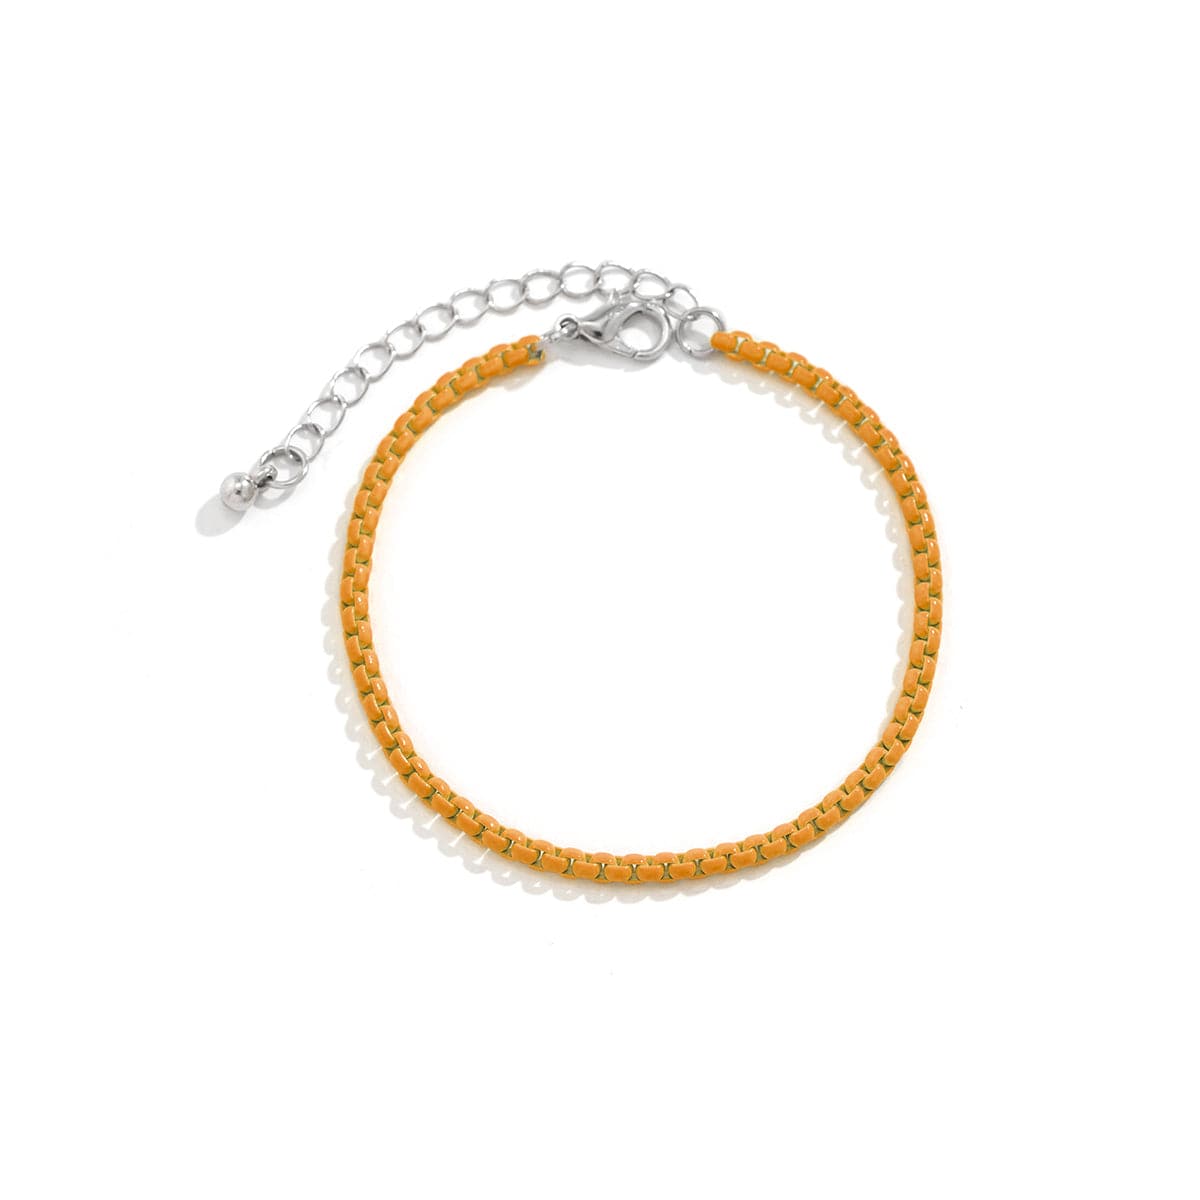 Orange Enamel & Silver-Plated Chain Bracelet